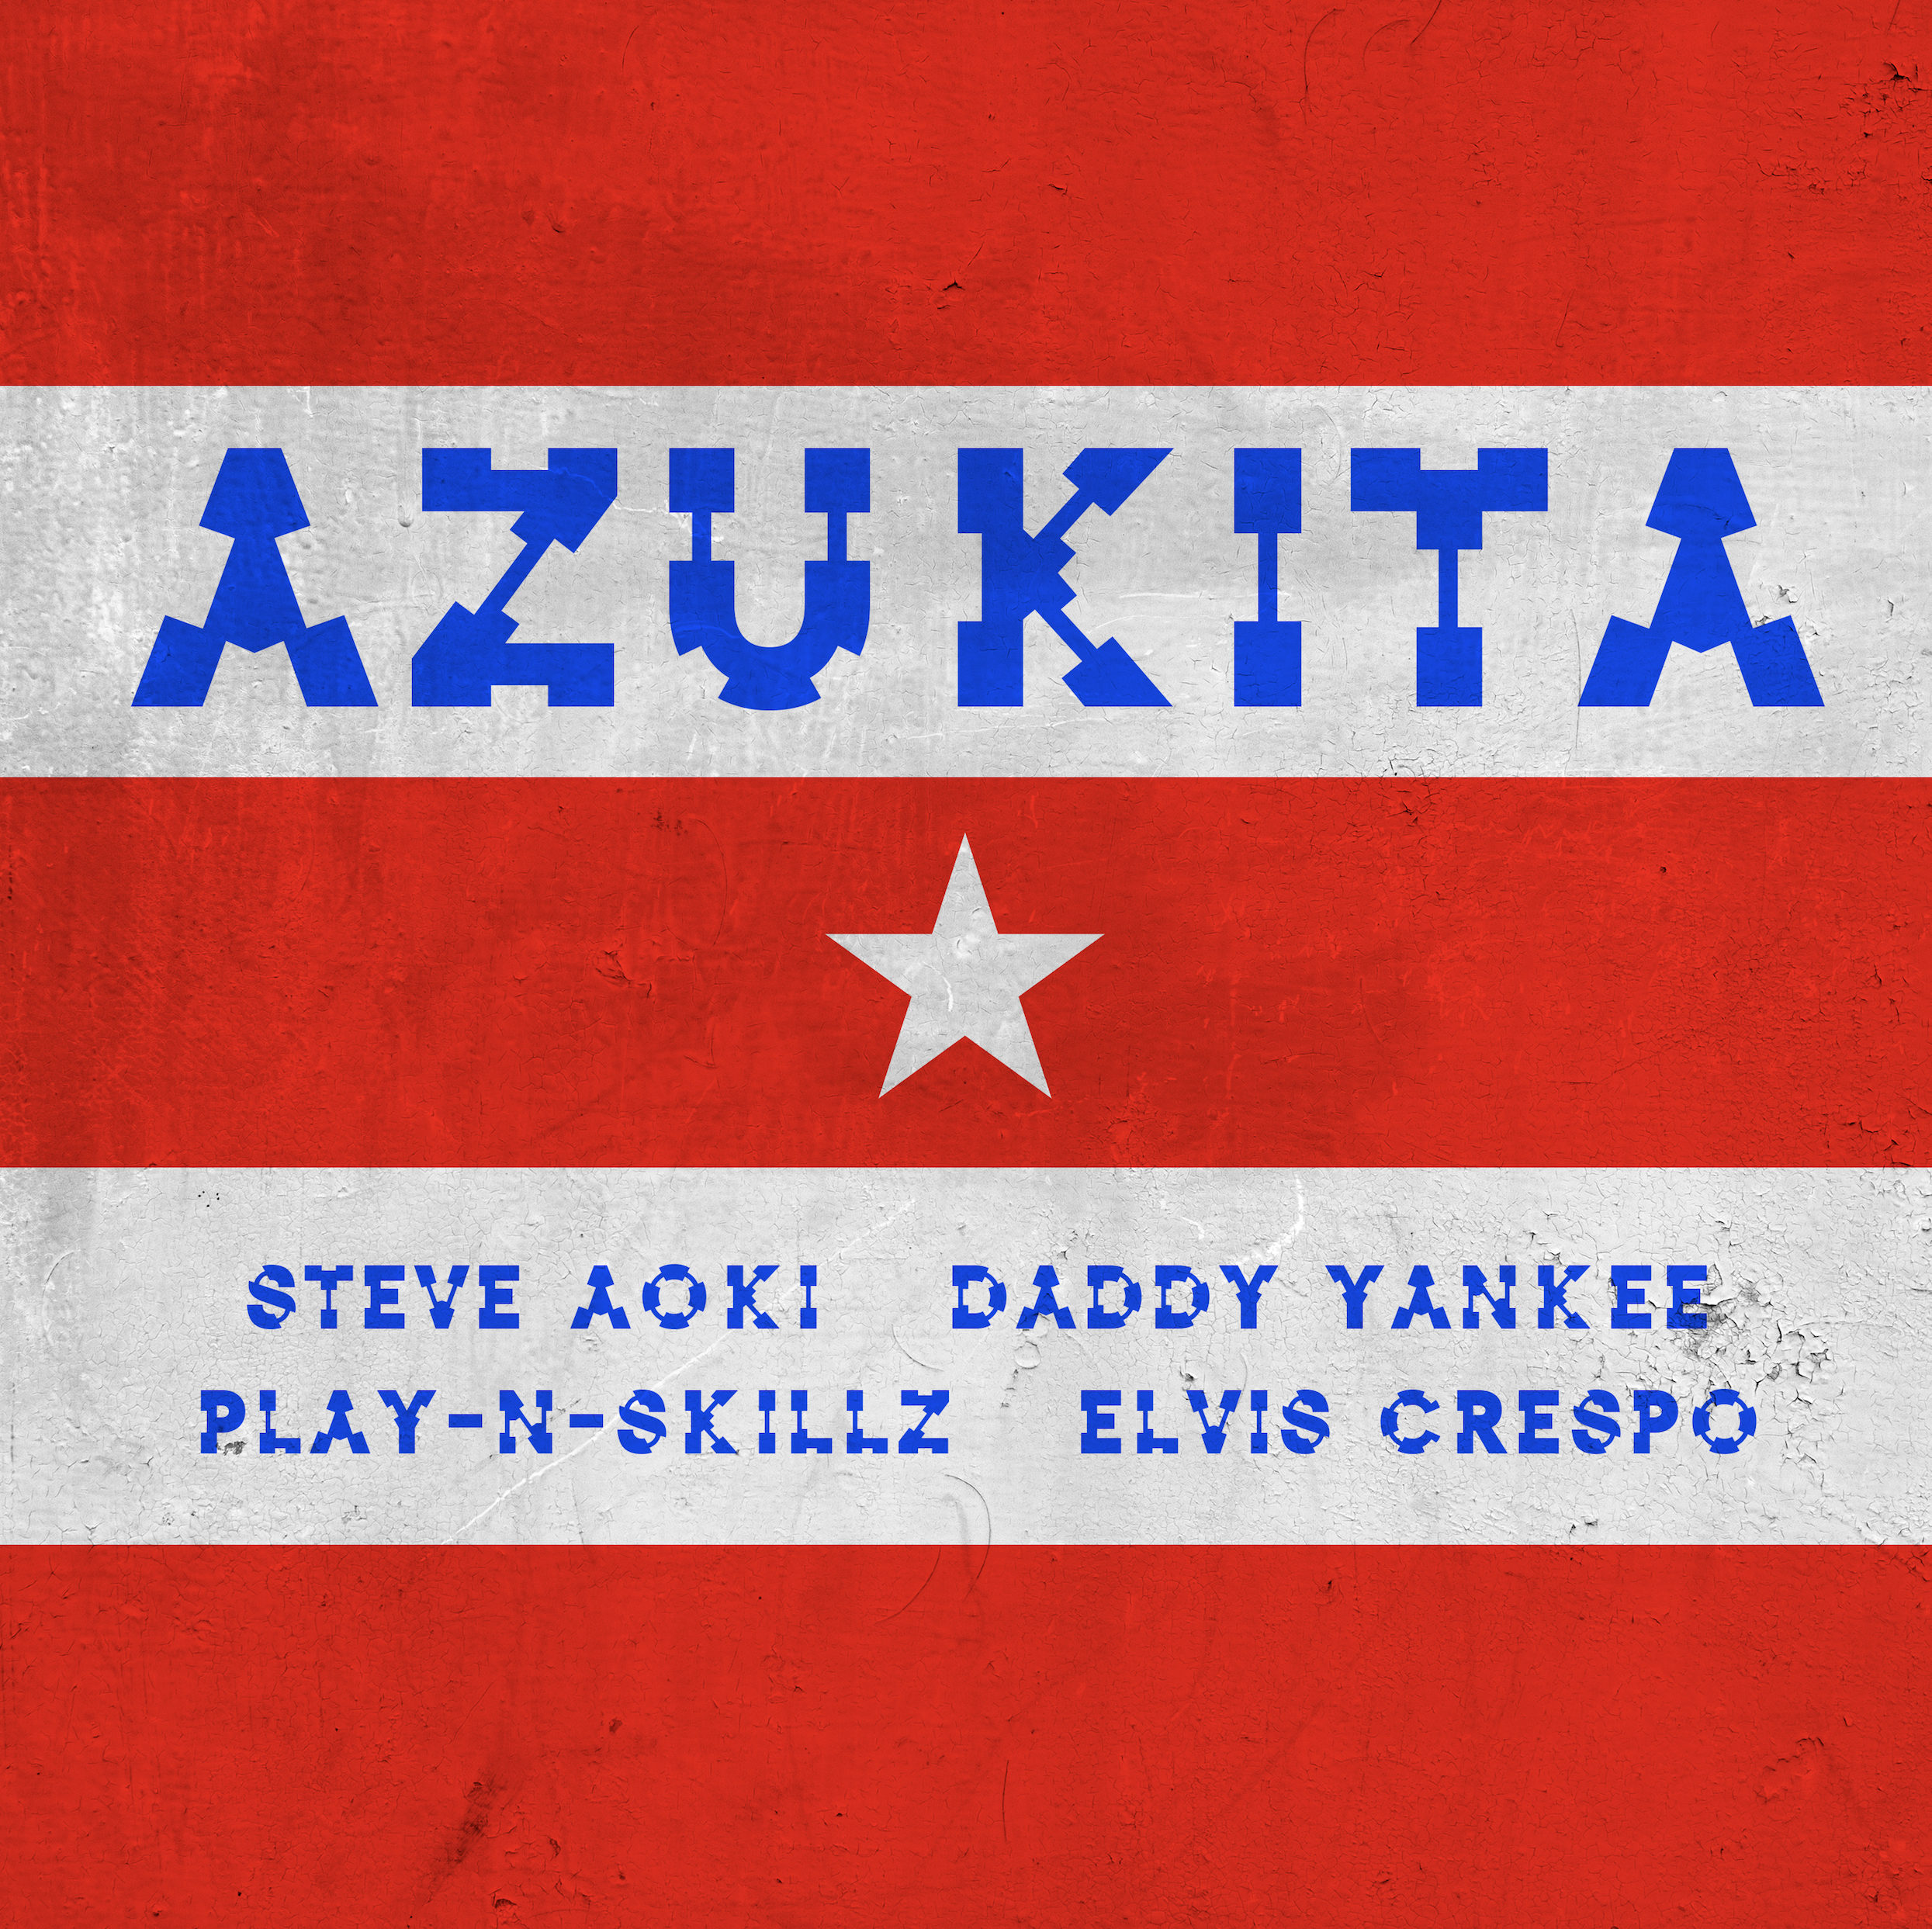 STEVE AOKI, DADDY YANKEE, ELVIS CRESPO y PLAY-N-SKILLZ se unen en la nueva canción  “Azukita”